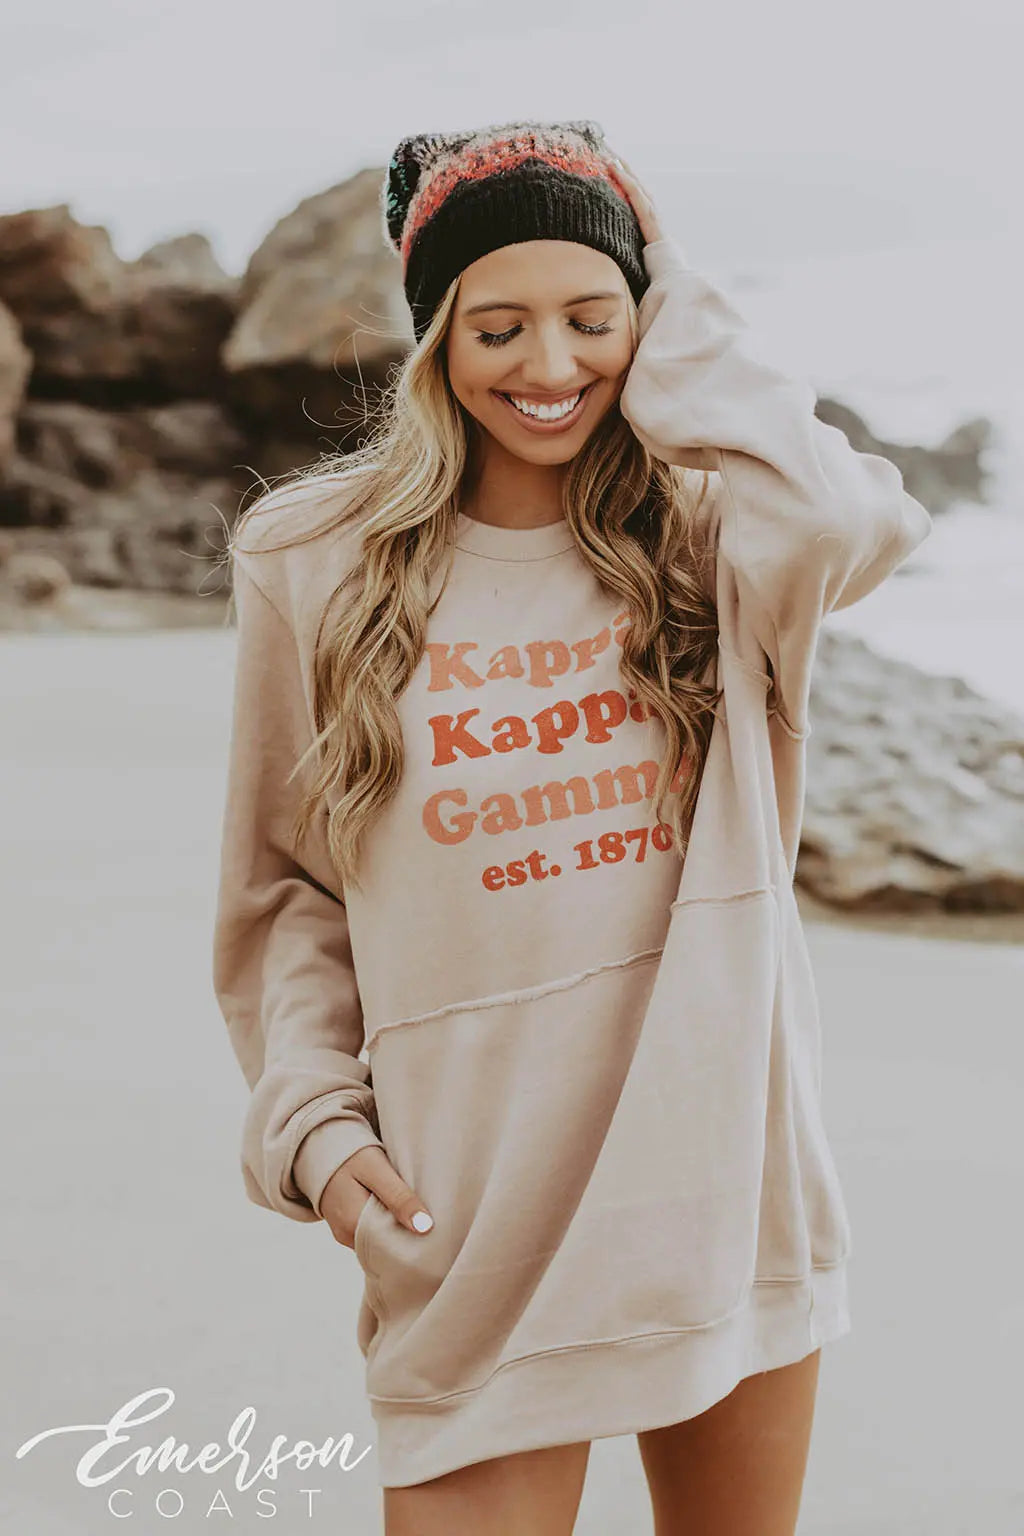 Kappa Kappa Gamma Leopard Design Beanie Hat